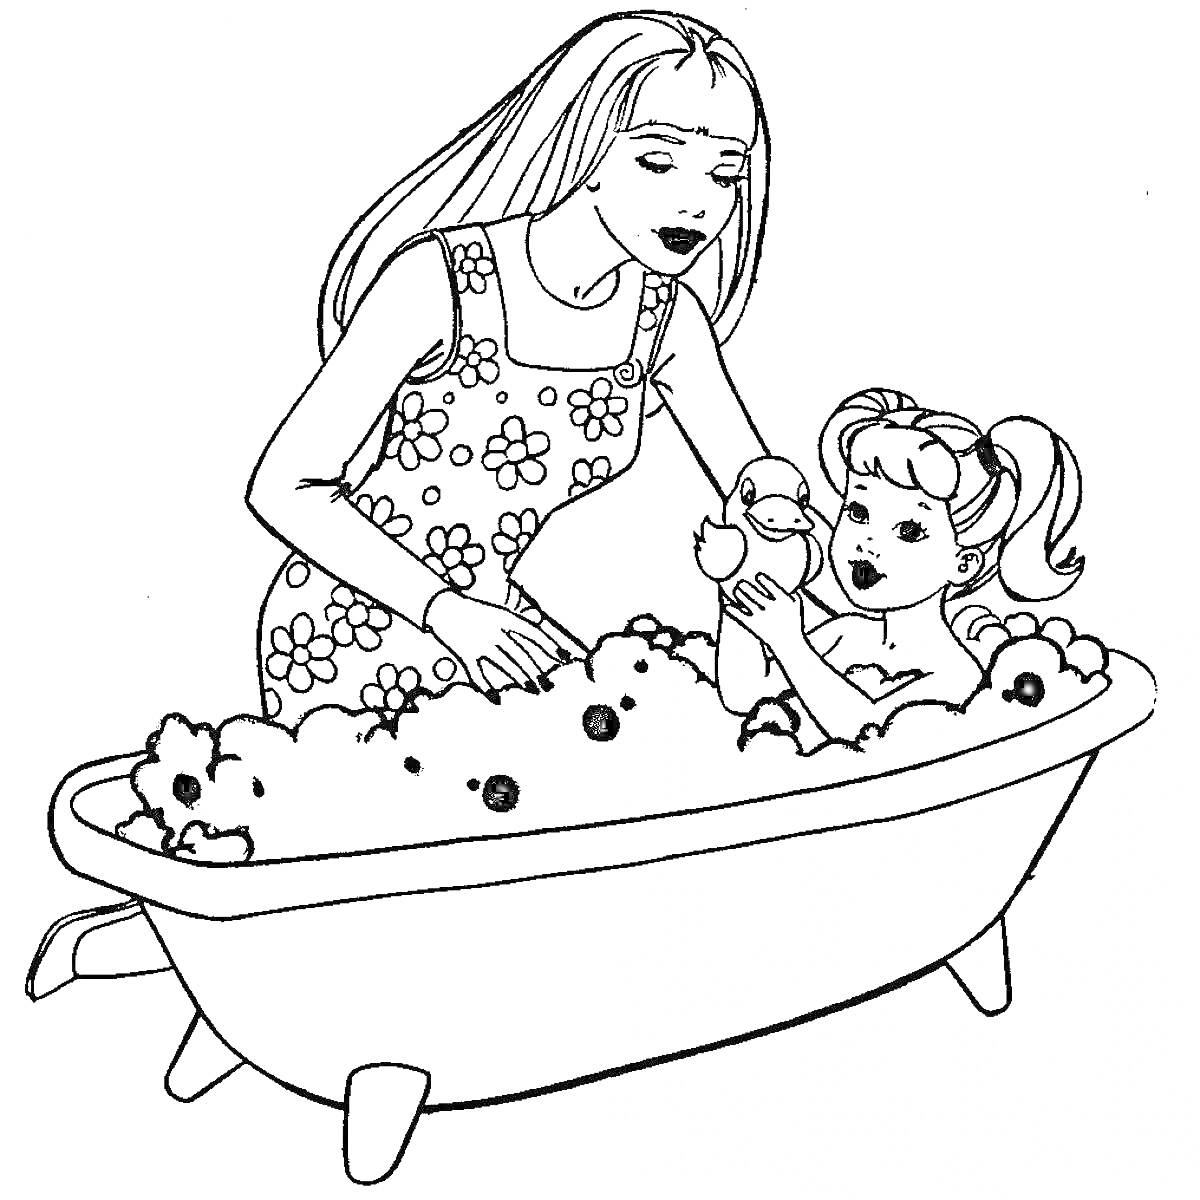 Мама помогает дочке купаться в ванне с пеной и игрушками